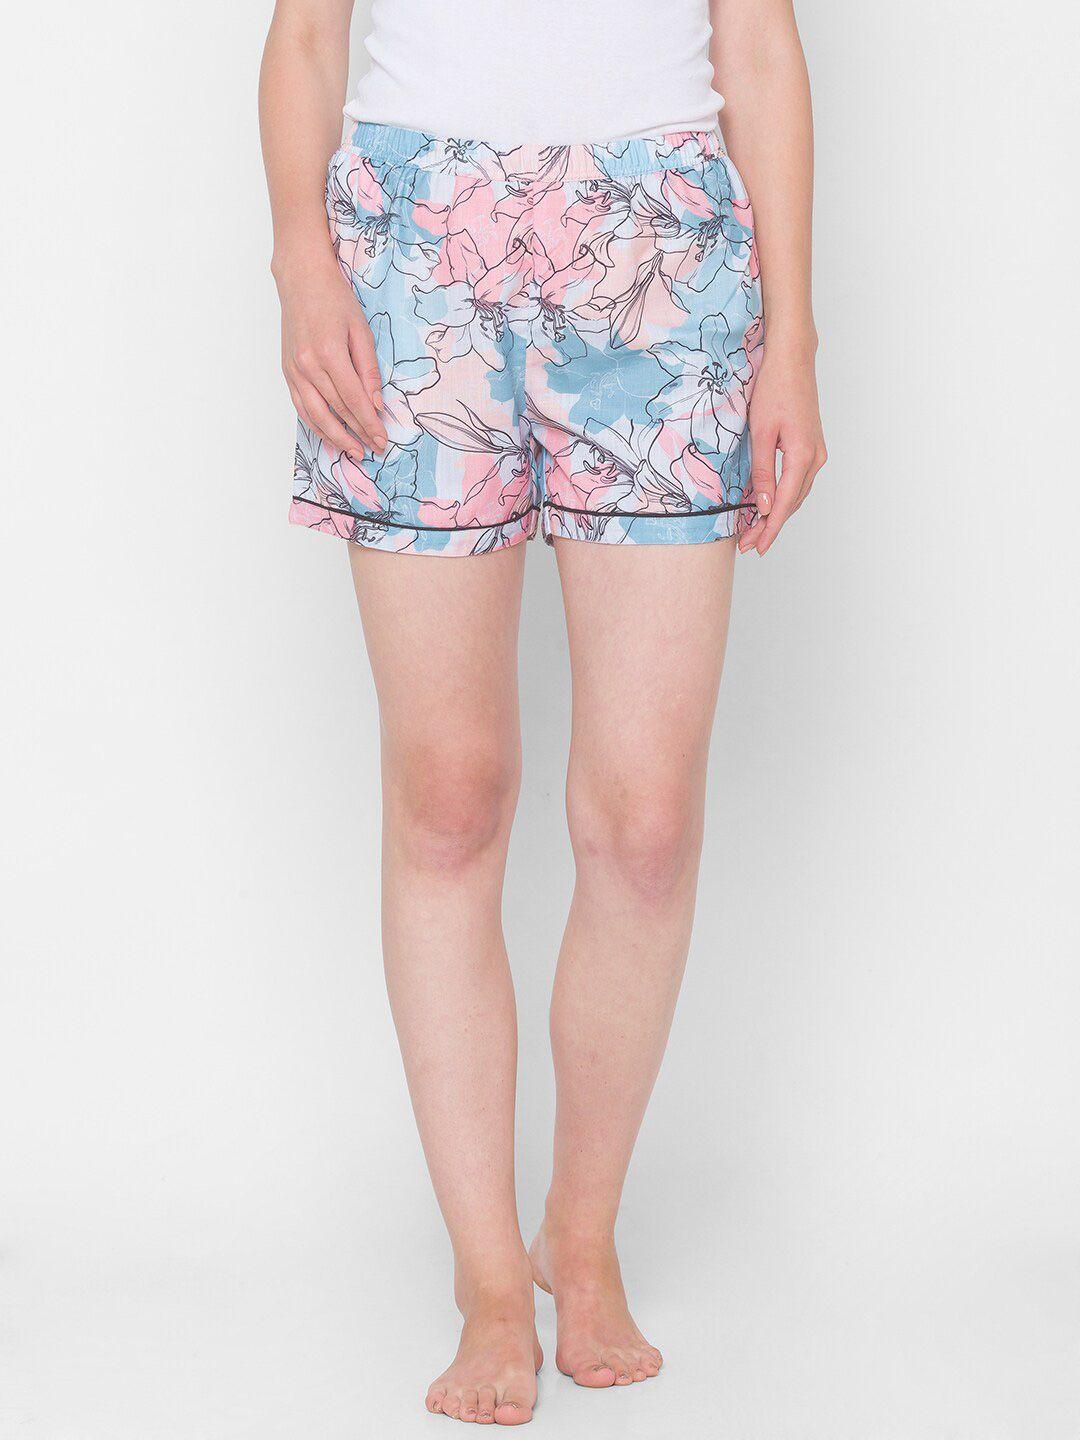 fashionrack-women-blue-printed-shorts